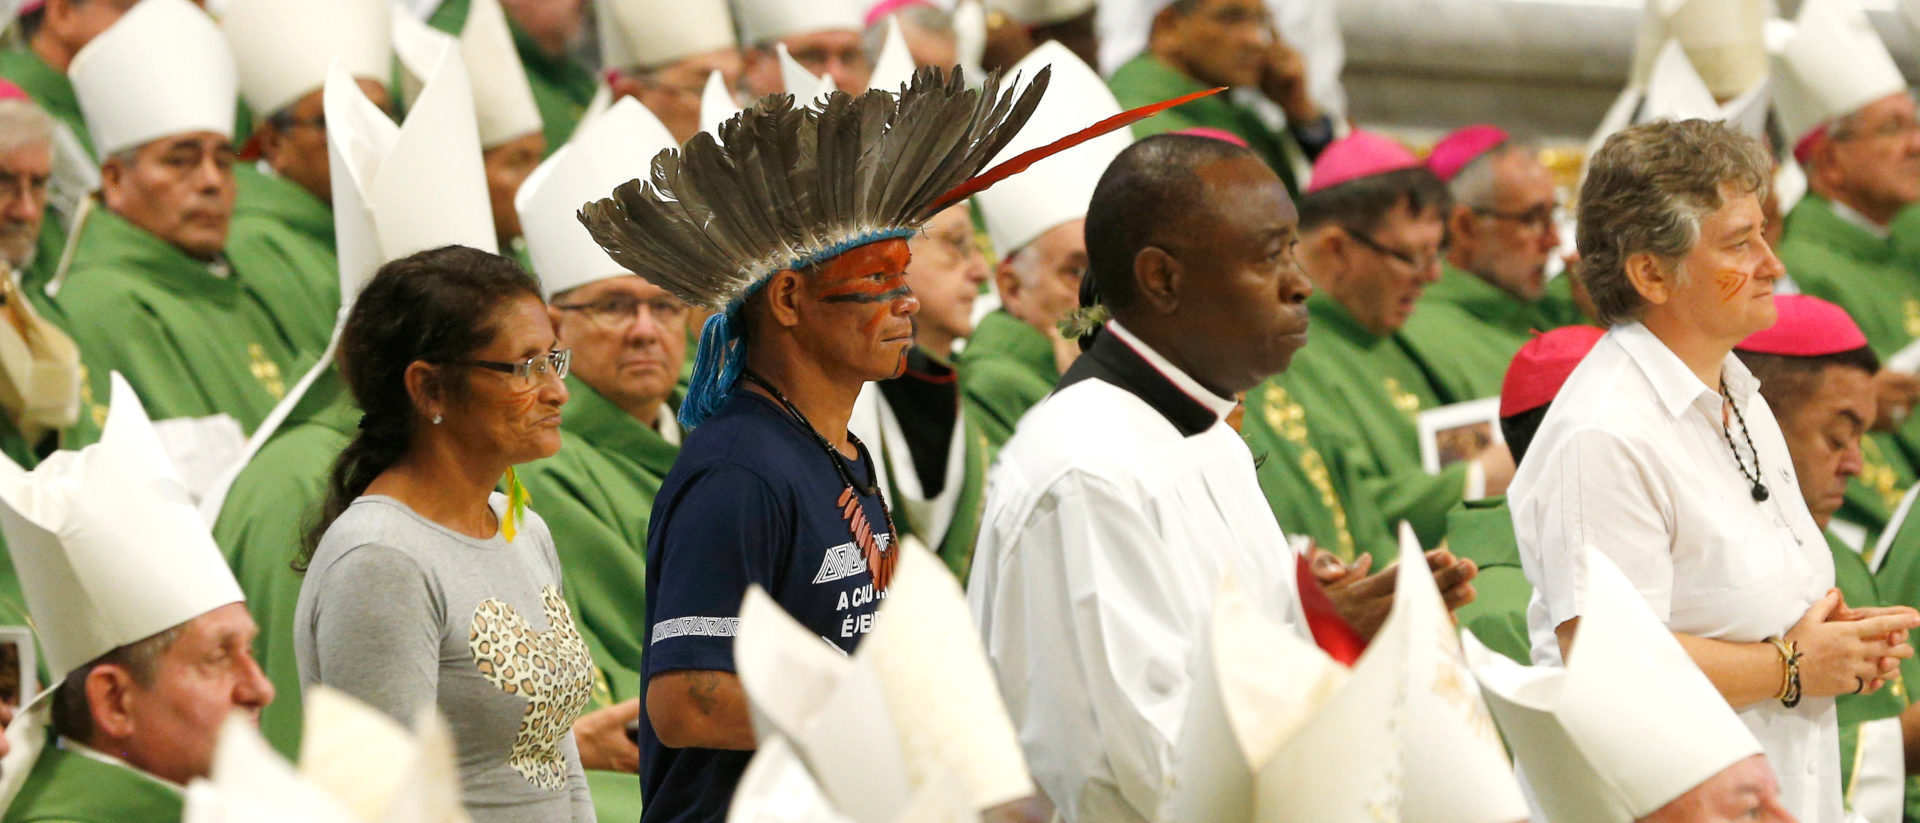 Gottesdienst an der Amazonas-Synode, 2019